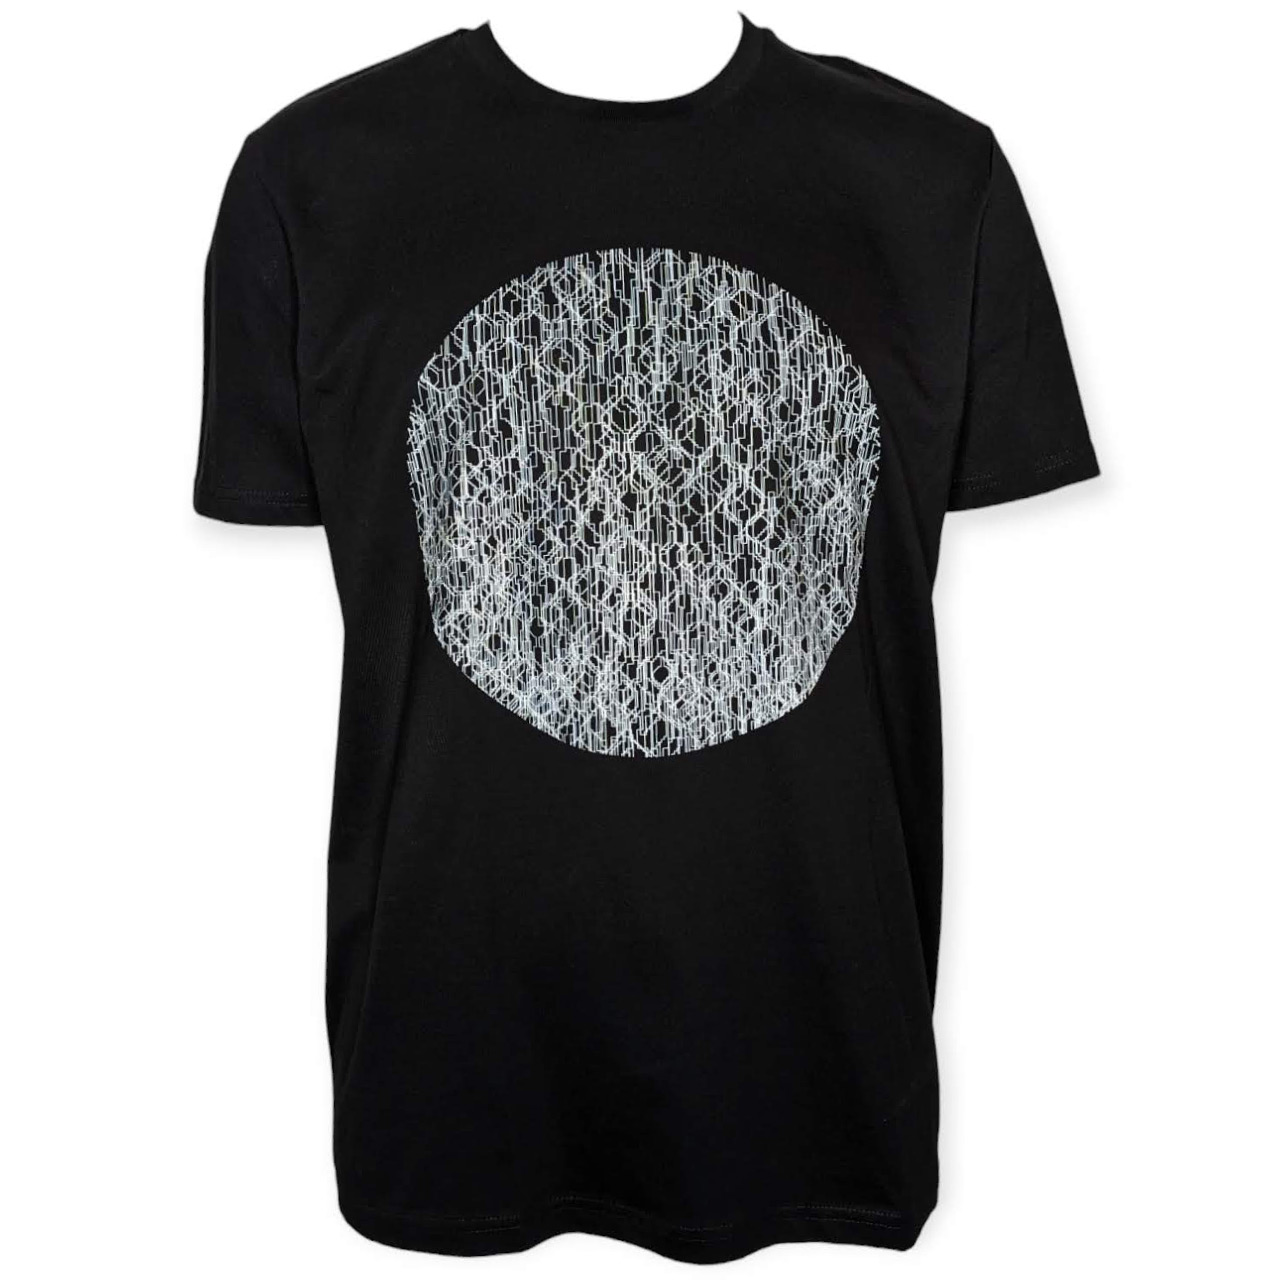 Berlin Design T-Shirt Fernsehturm Kreis schwarz/weiß